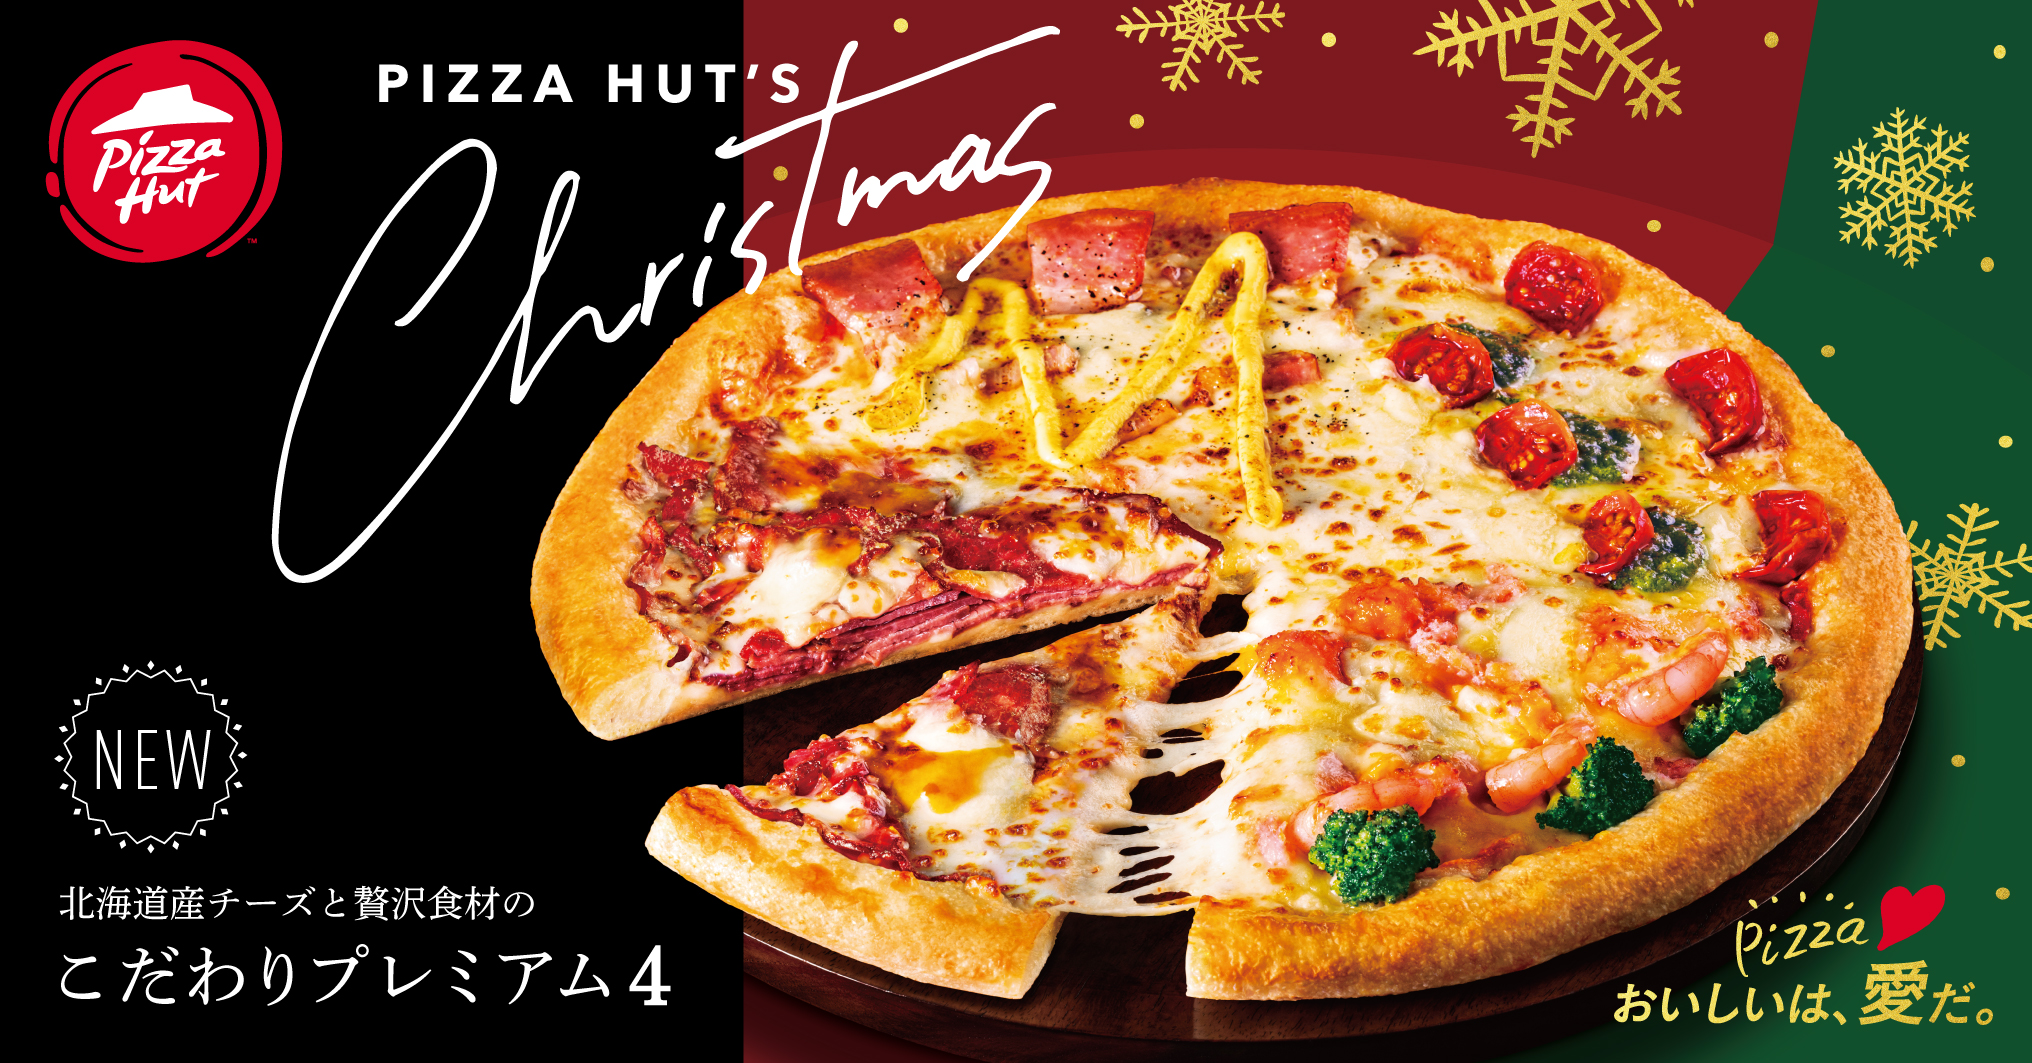 ピザハットが長年の研究開発の末 ついに商品化 ローストビーフをミルフィーユ仕立てにトッピングした渾身の贅沢ピザ こだわりプレミアム4 新発売 日本ピザハット株式会社のプレスリリース